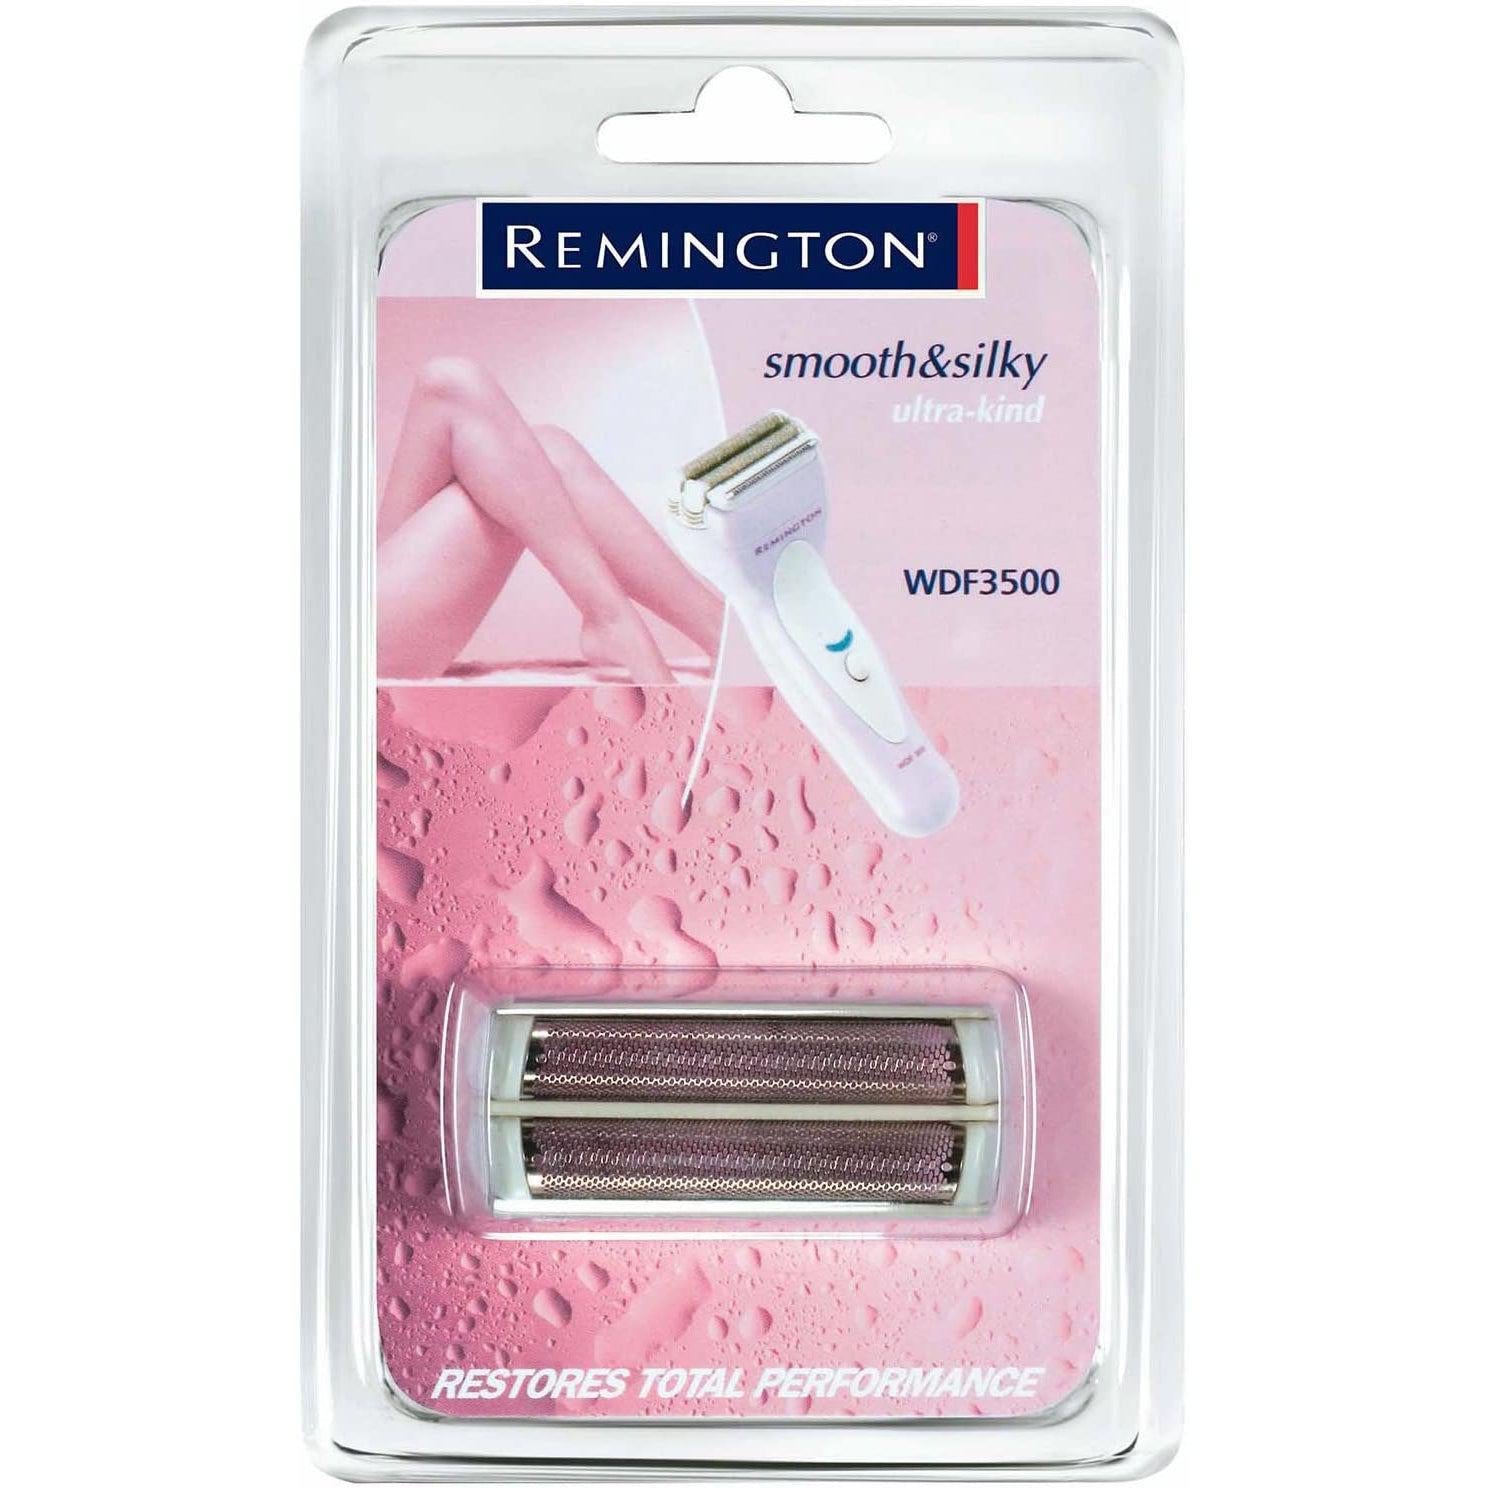 Remington SP140 Foil Pack - Healthxpress.ie